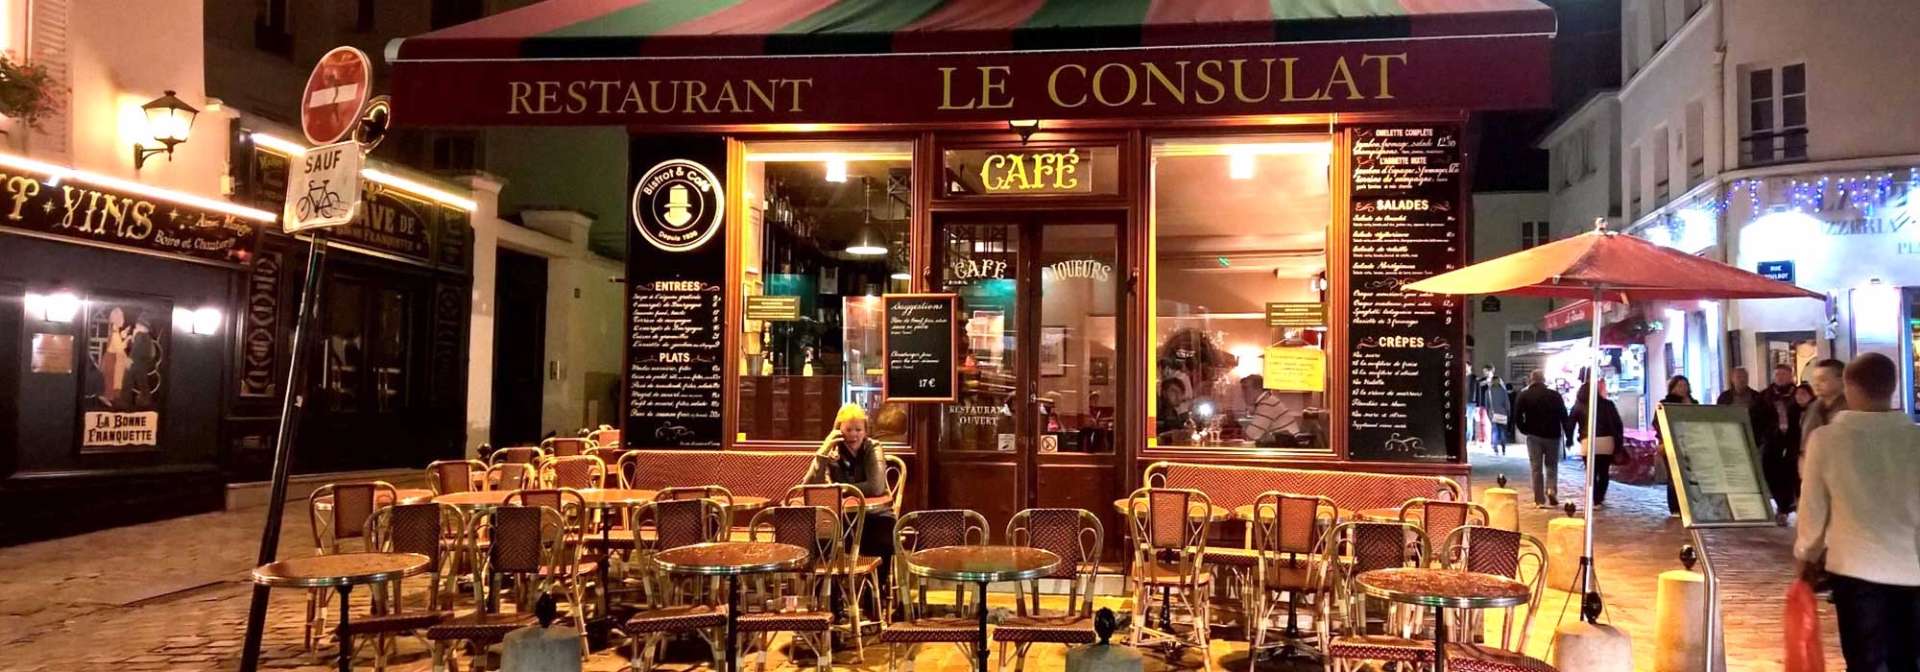 paris-restaurant-le-consulat.jpg